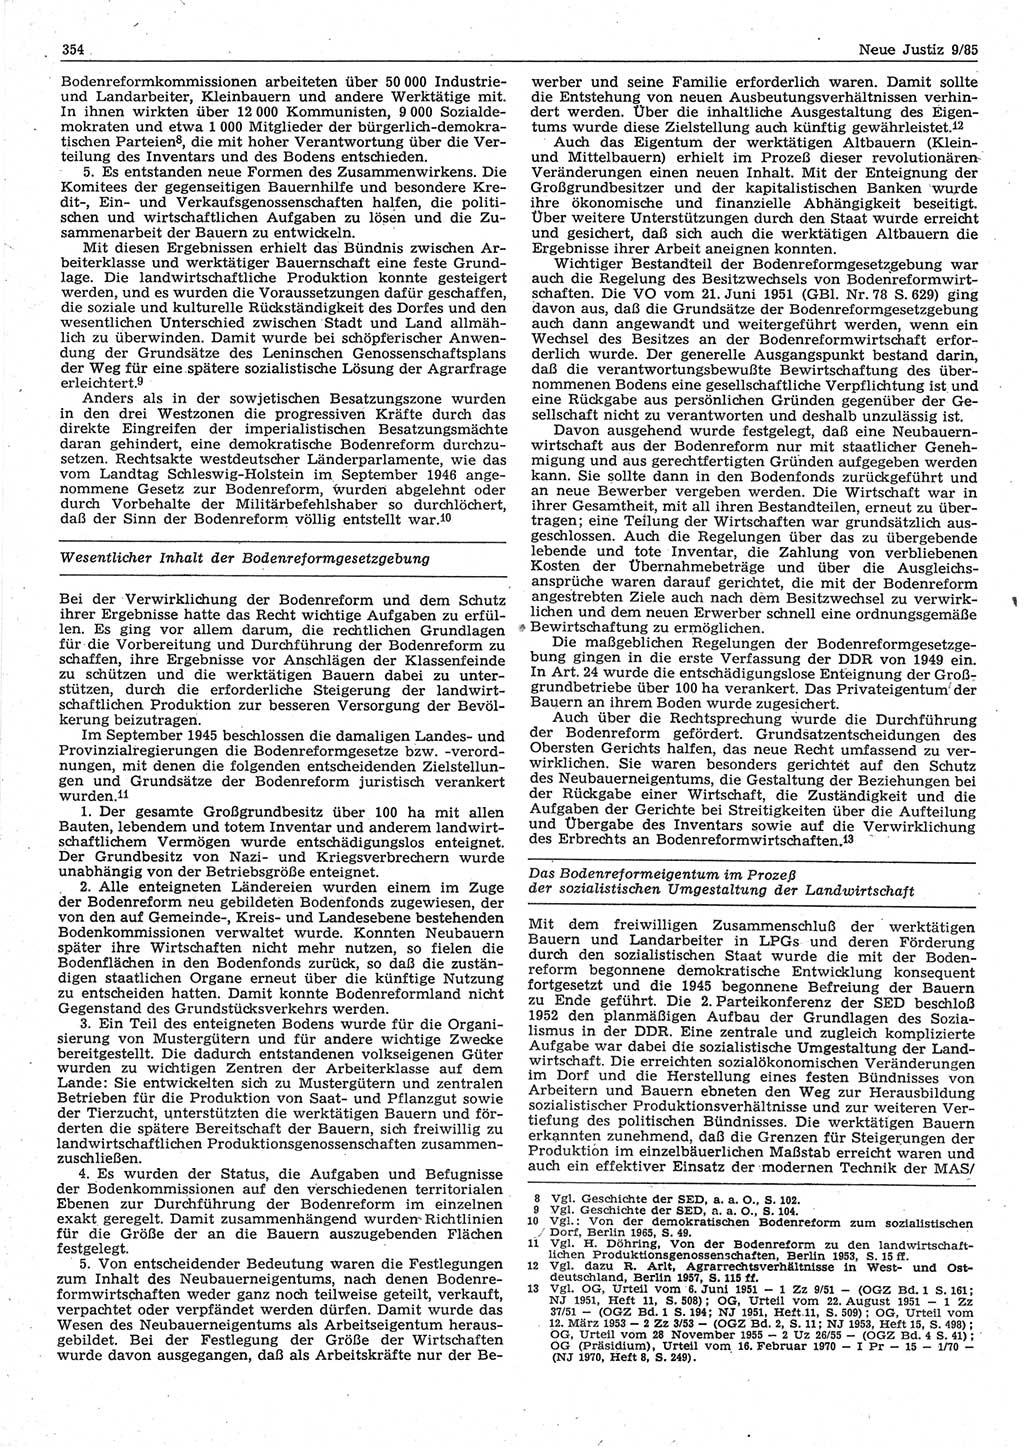 Neue Justiz (NJ), Zeitschrift für sozialistisches Recht und Gesetzlichkeit [Deutsche Demokratische Republik (DDR)], 39. Jahrgang 1985, Seite 354 (NJ DDR 1985, S. 354)